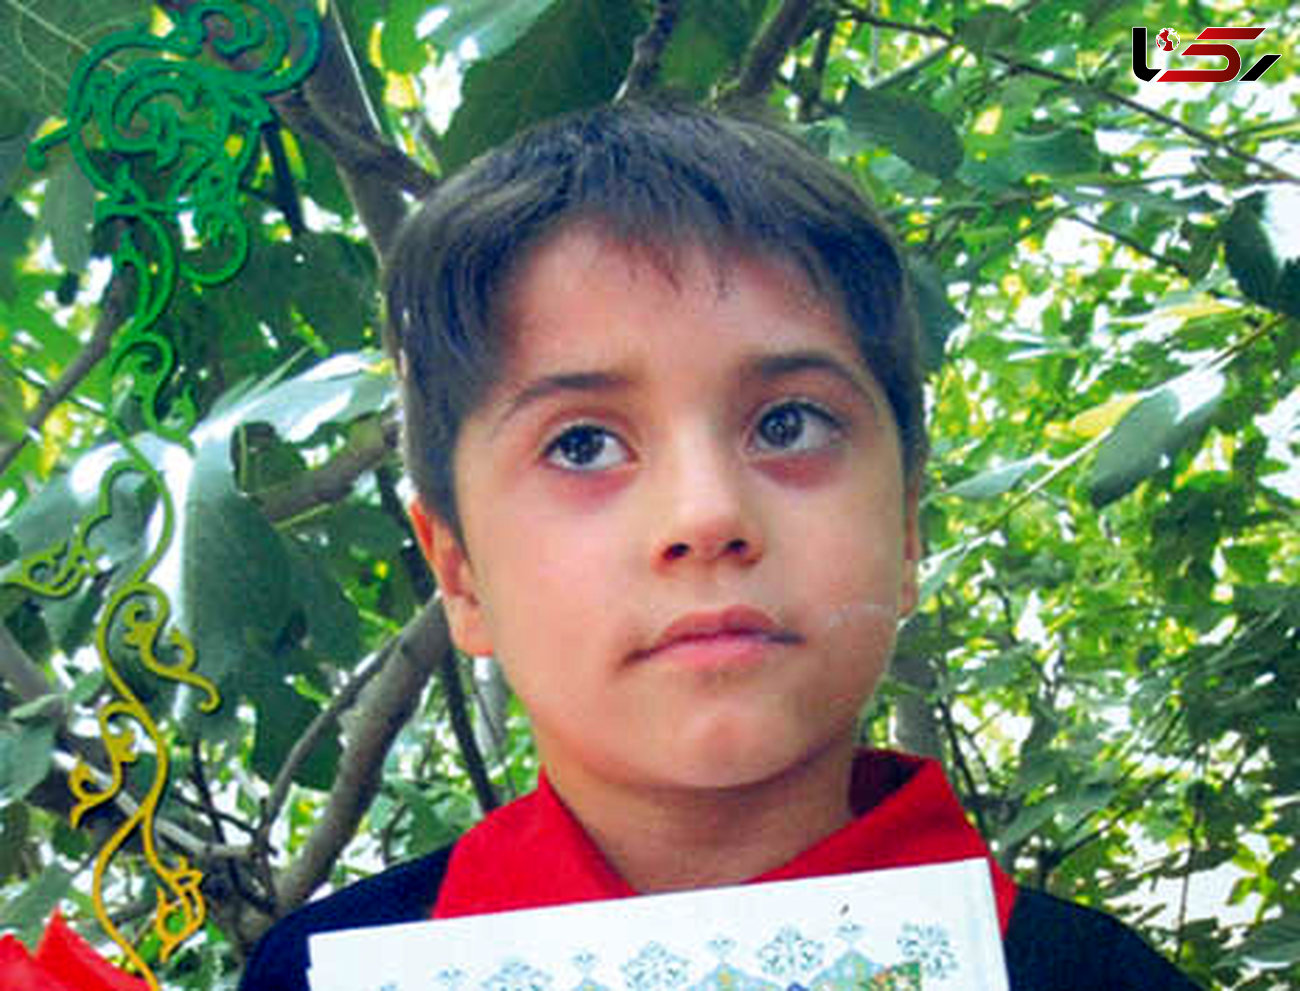 اعتراف حیوانی یک مرد به قتل پسر 9 ساله اش/ علی در آرزوی رفتن به مدرسه ماند + عکس